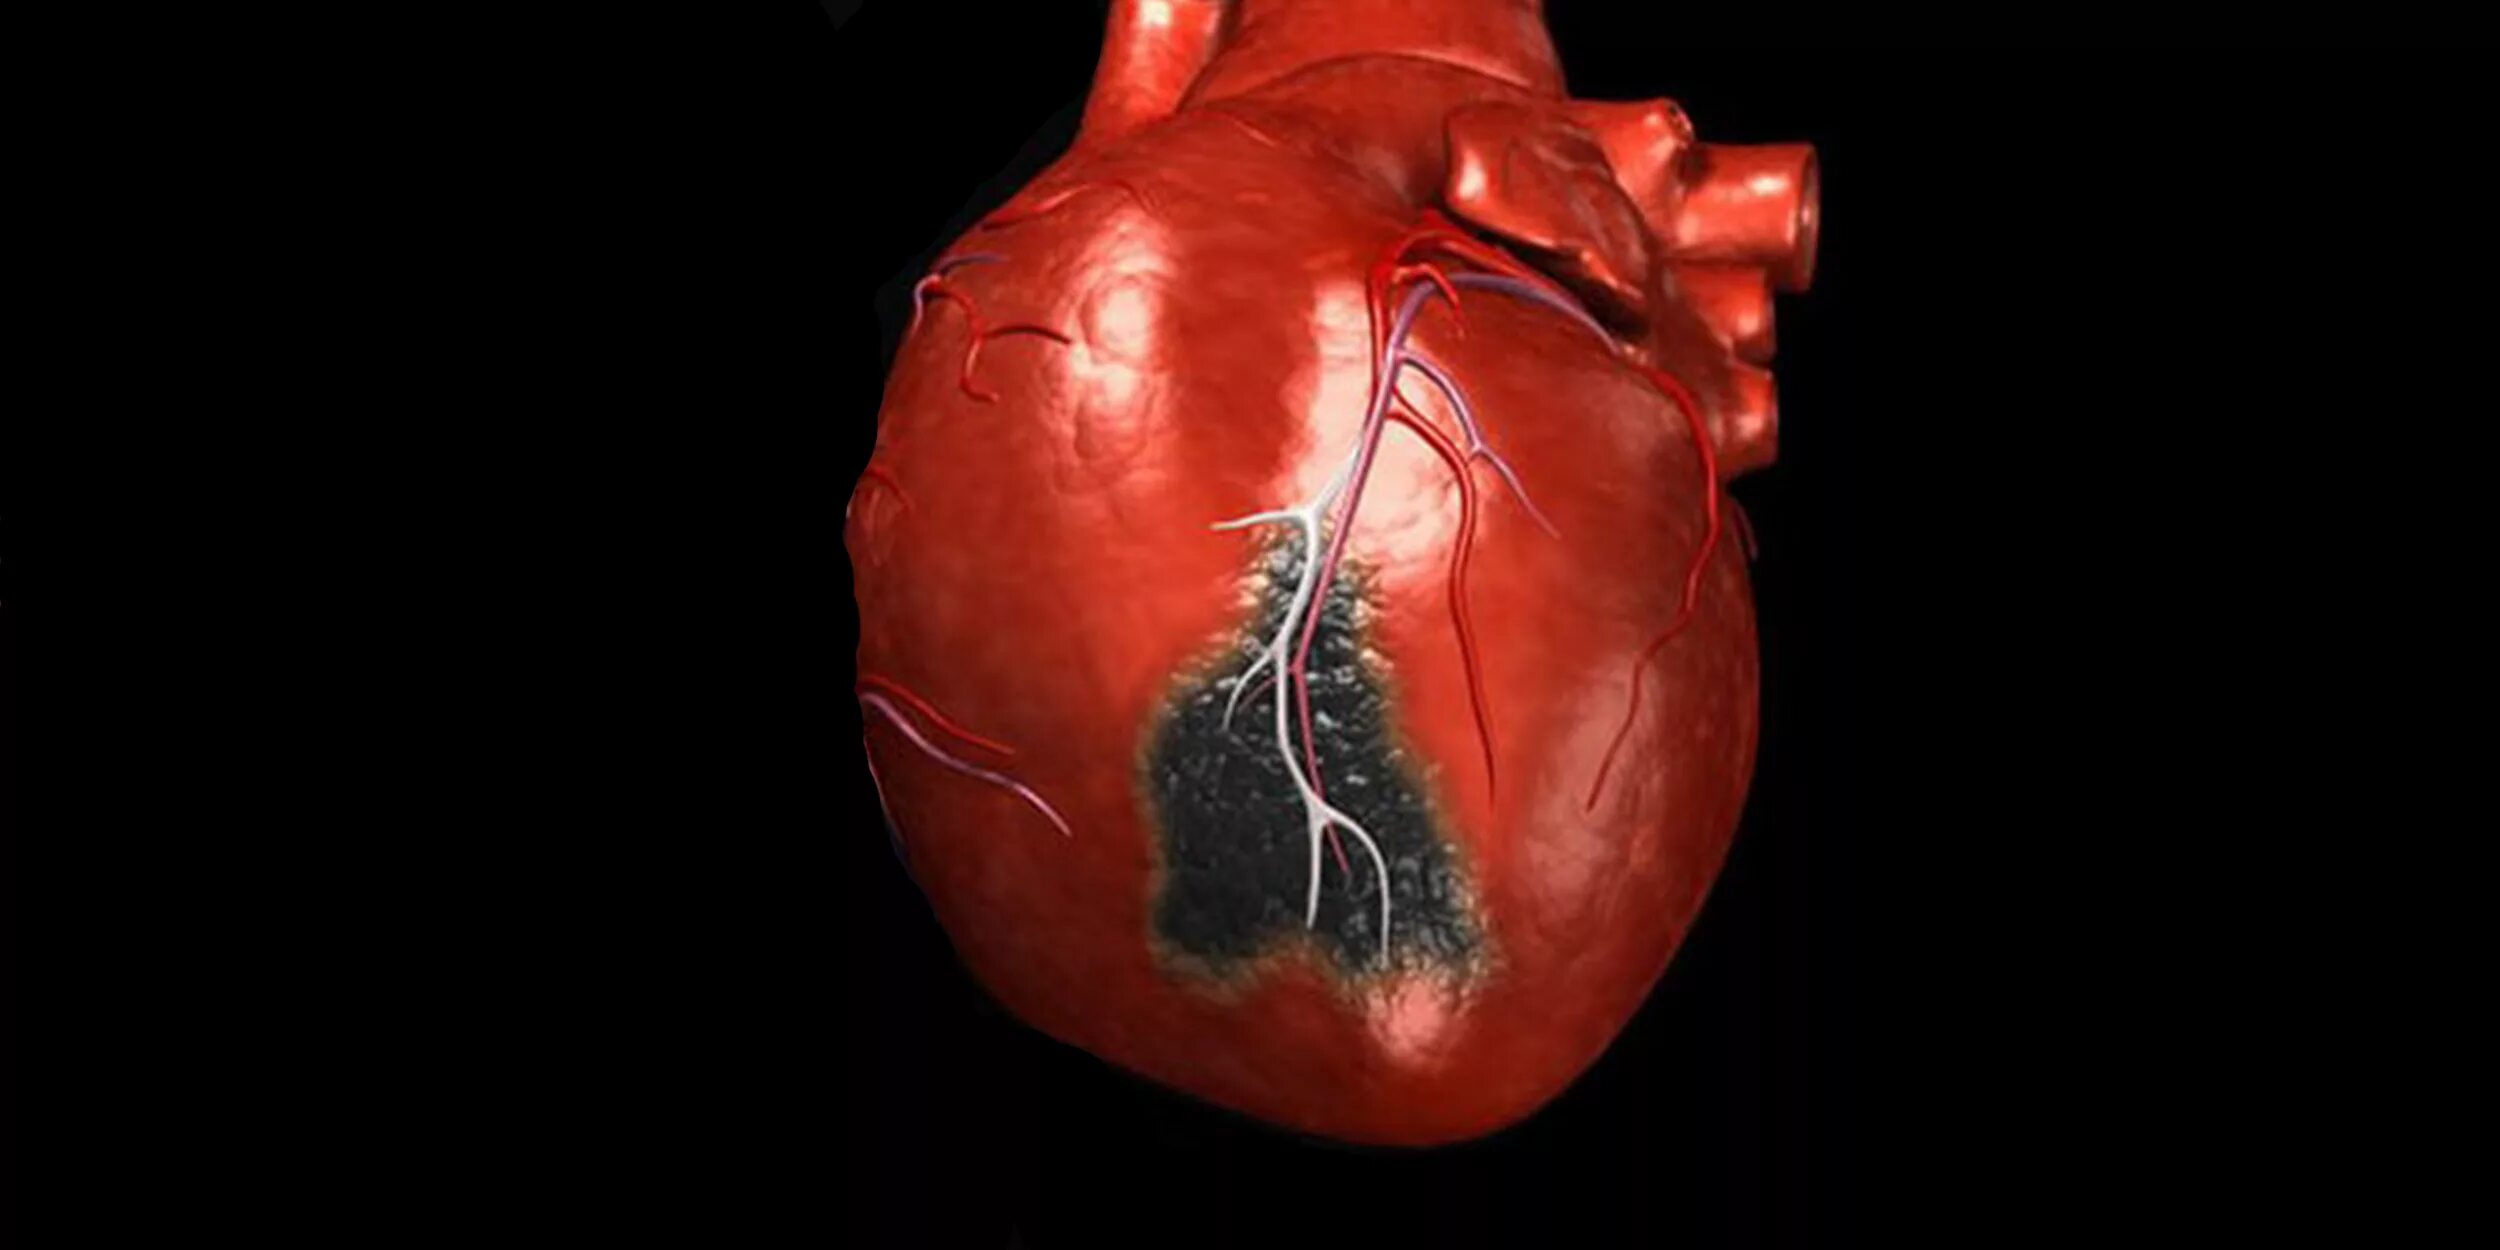 Осложнение на сердце после. Инфаркт миокарда (некроз миокарда). Инфаркт миокарда Юрский.